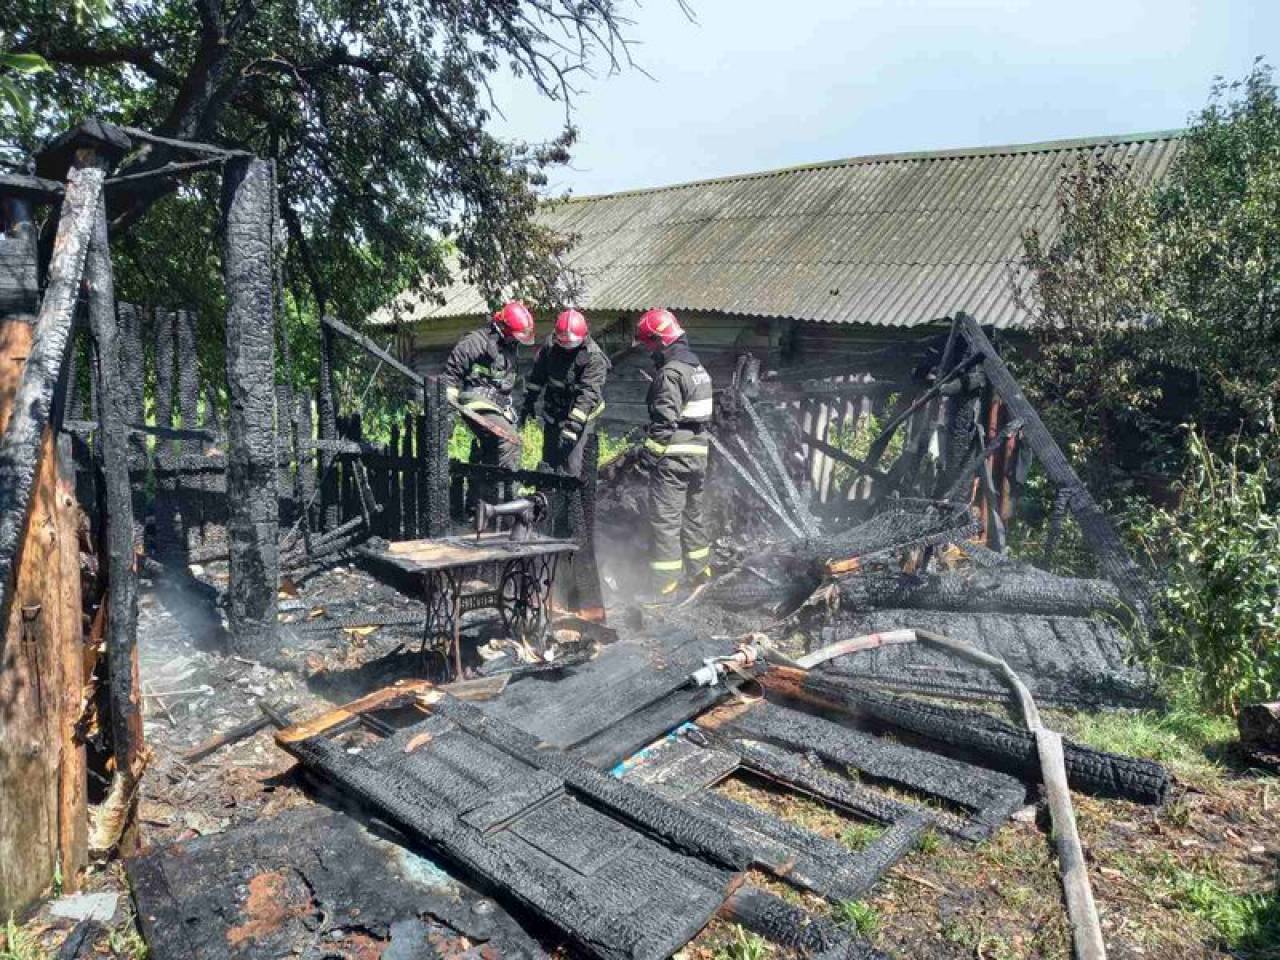 В деревне под Ивье удар молнии уничтожил сарай на частном подворье: спасатели не дали распространиться огню на соседские дома